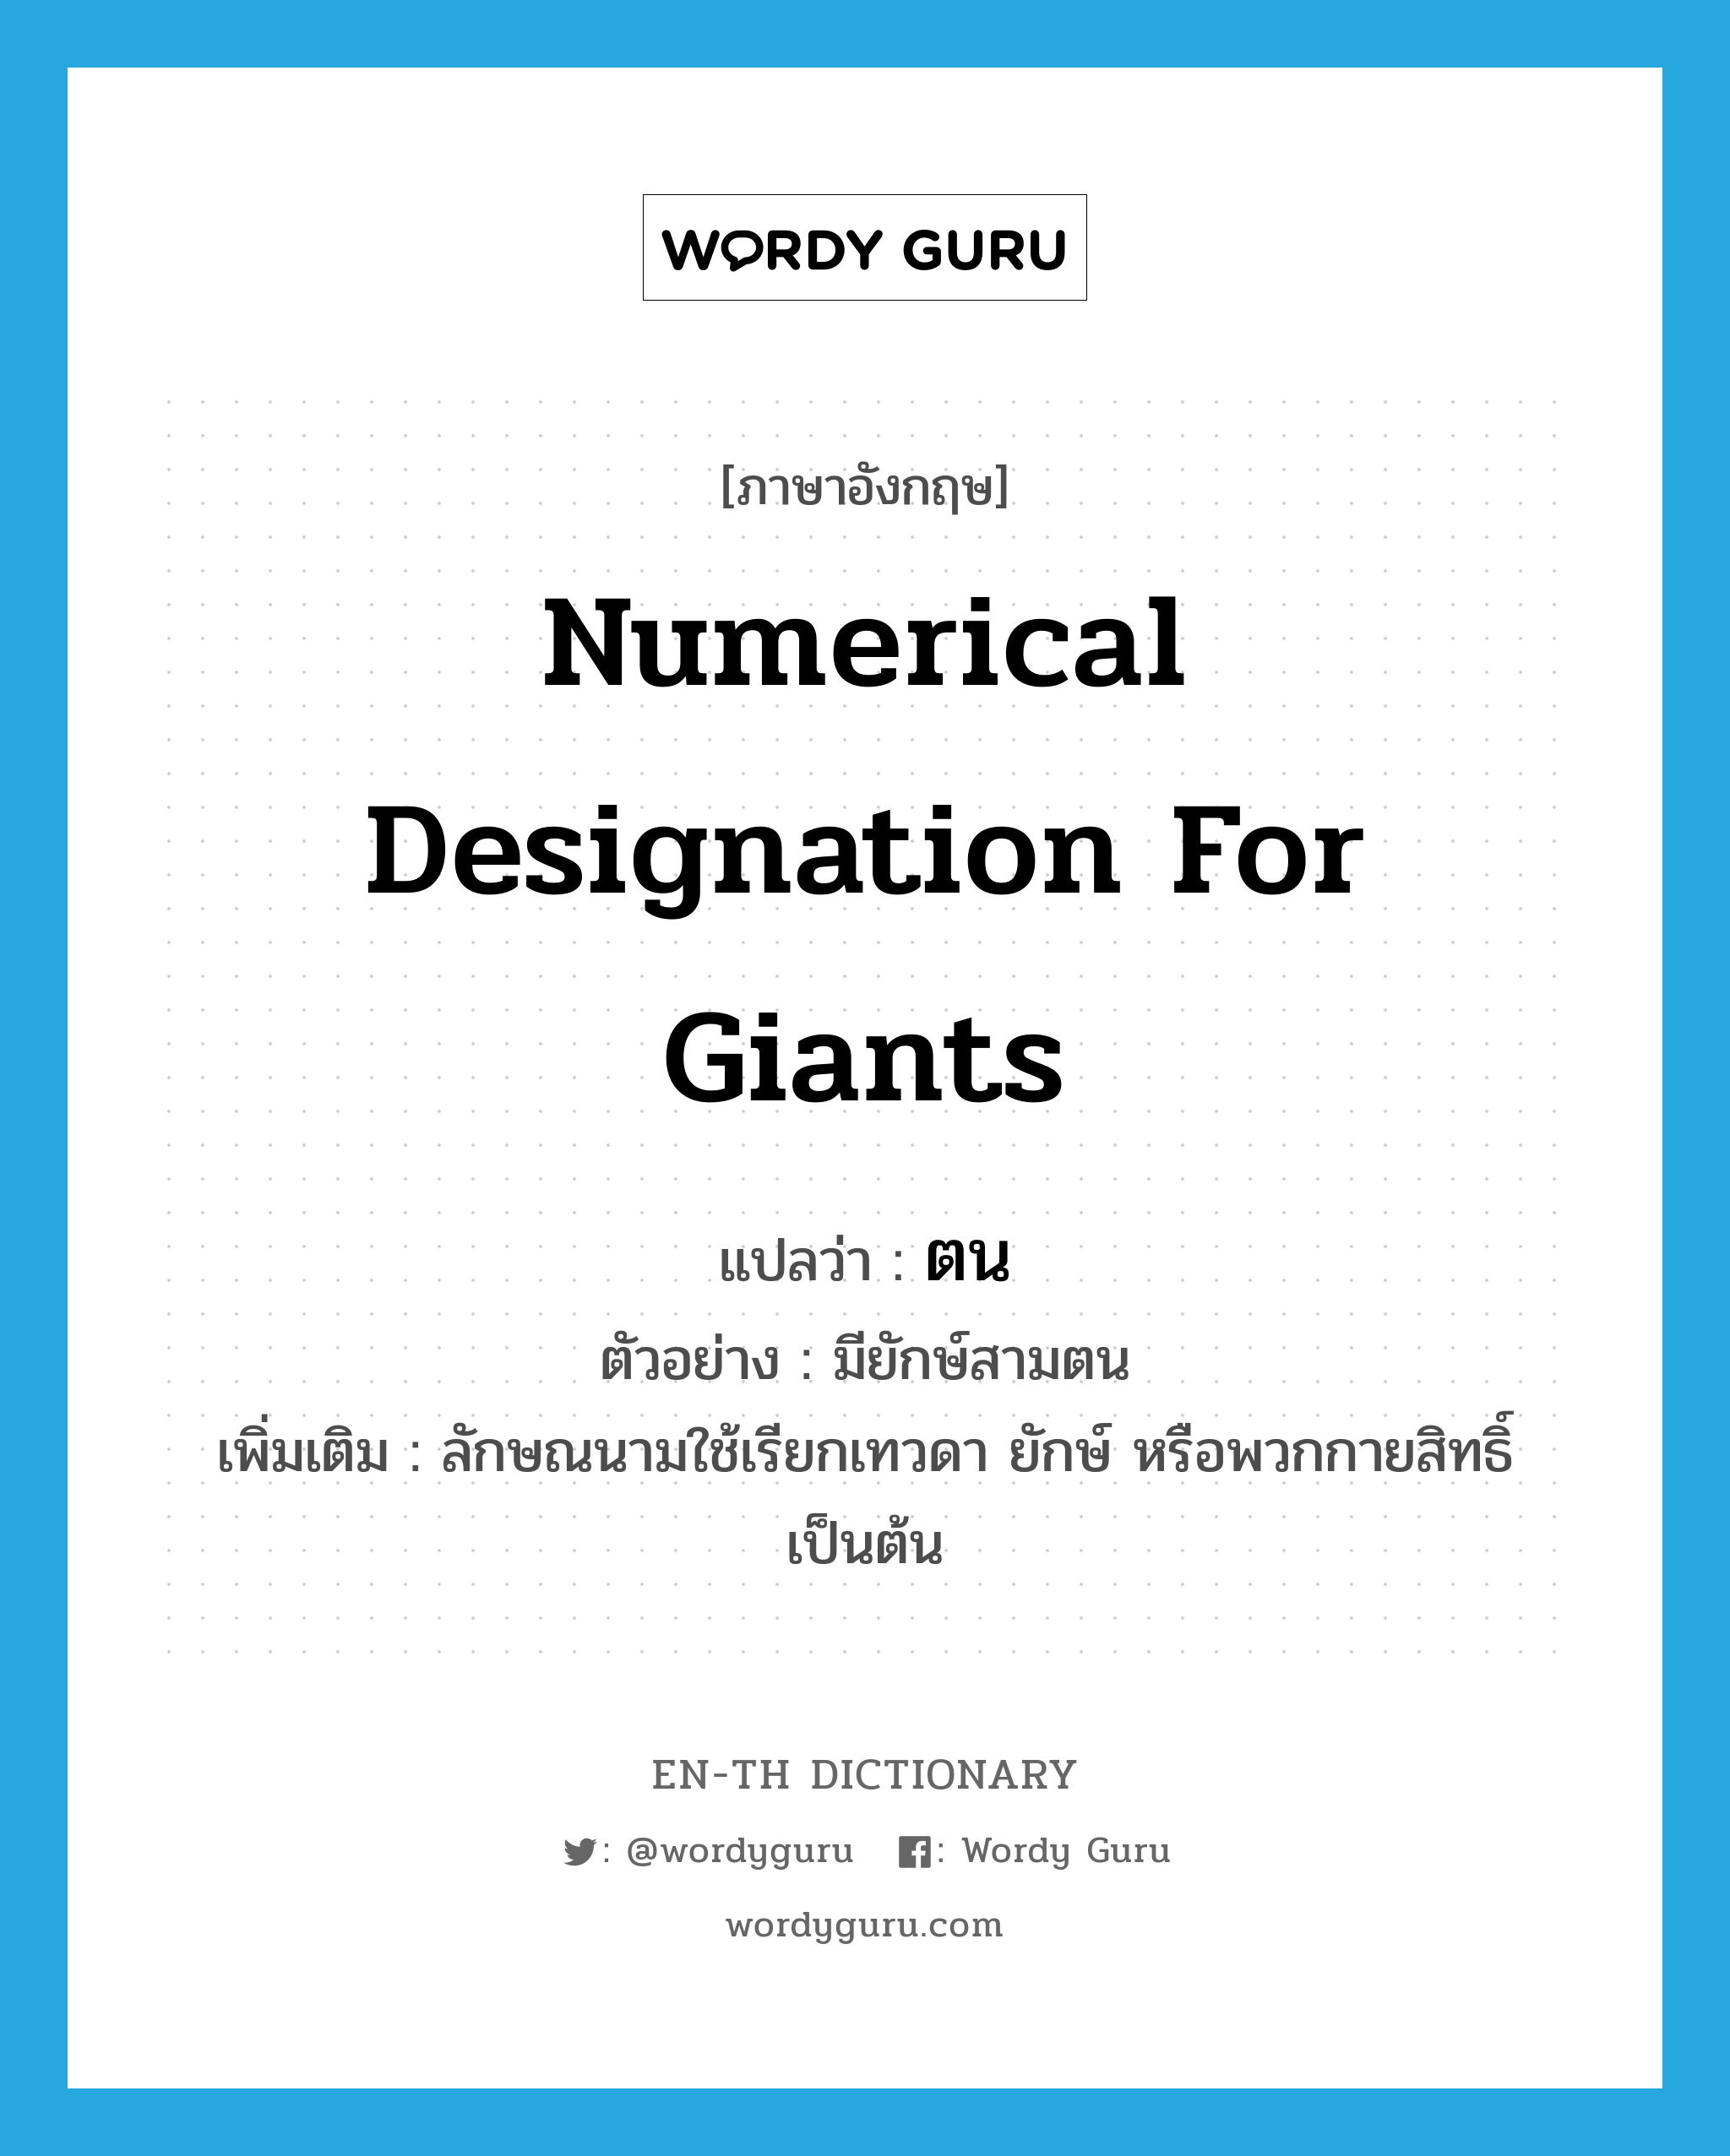 numerical designation for giants แปลว่า?, คำศัพท์ภาษาอังกฤษ numerical designation for giants แปลว่า ตน ประเภท CLAS ตัวอย่าง มียักษ์สามตน เพิ่มเติม ลักษณนามใช้เรียกเทวดา ยักษ์ หรือพวกกายสิทธิ์ เป็นต้น หมวด CLAS